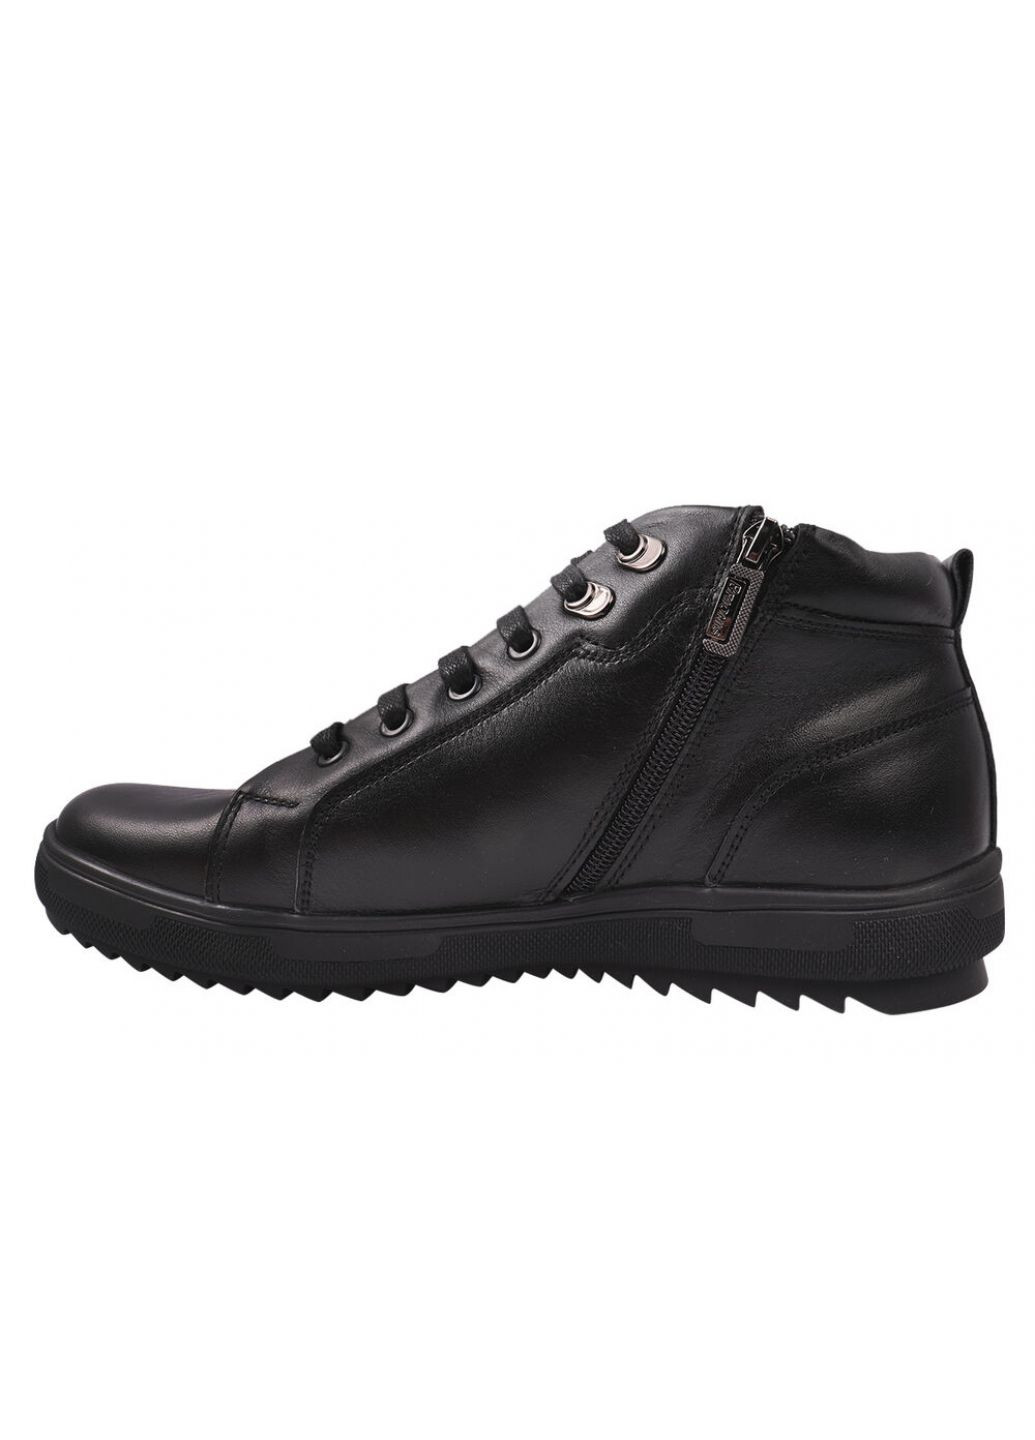 Черные ботинки мужские из натуральной кожи, на низком ходу, на шнуровке, черные, украина Brionis